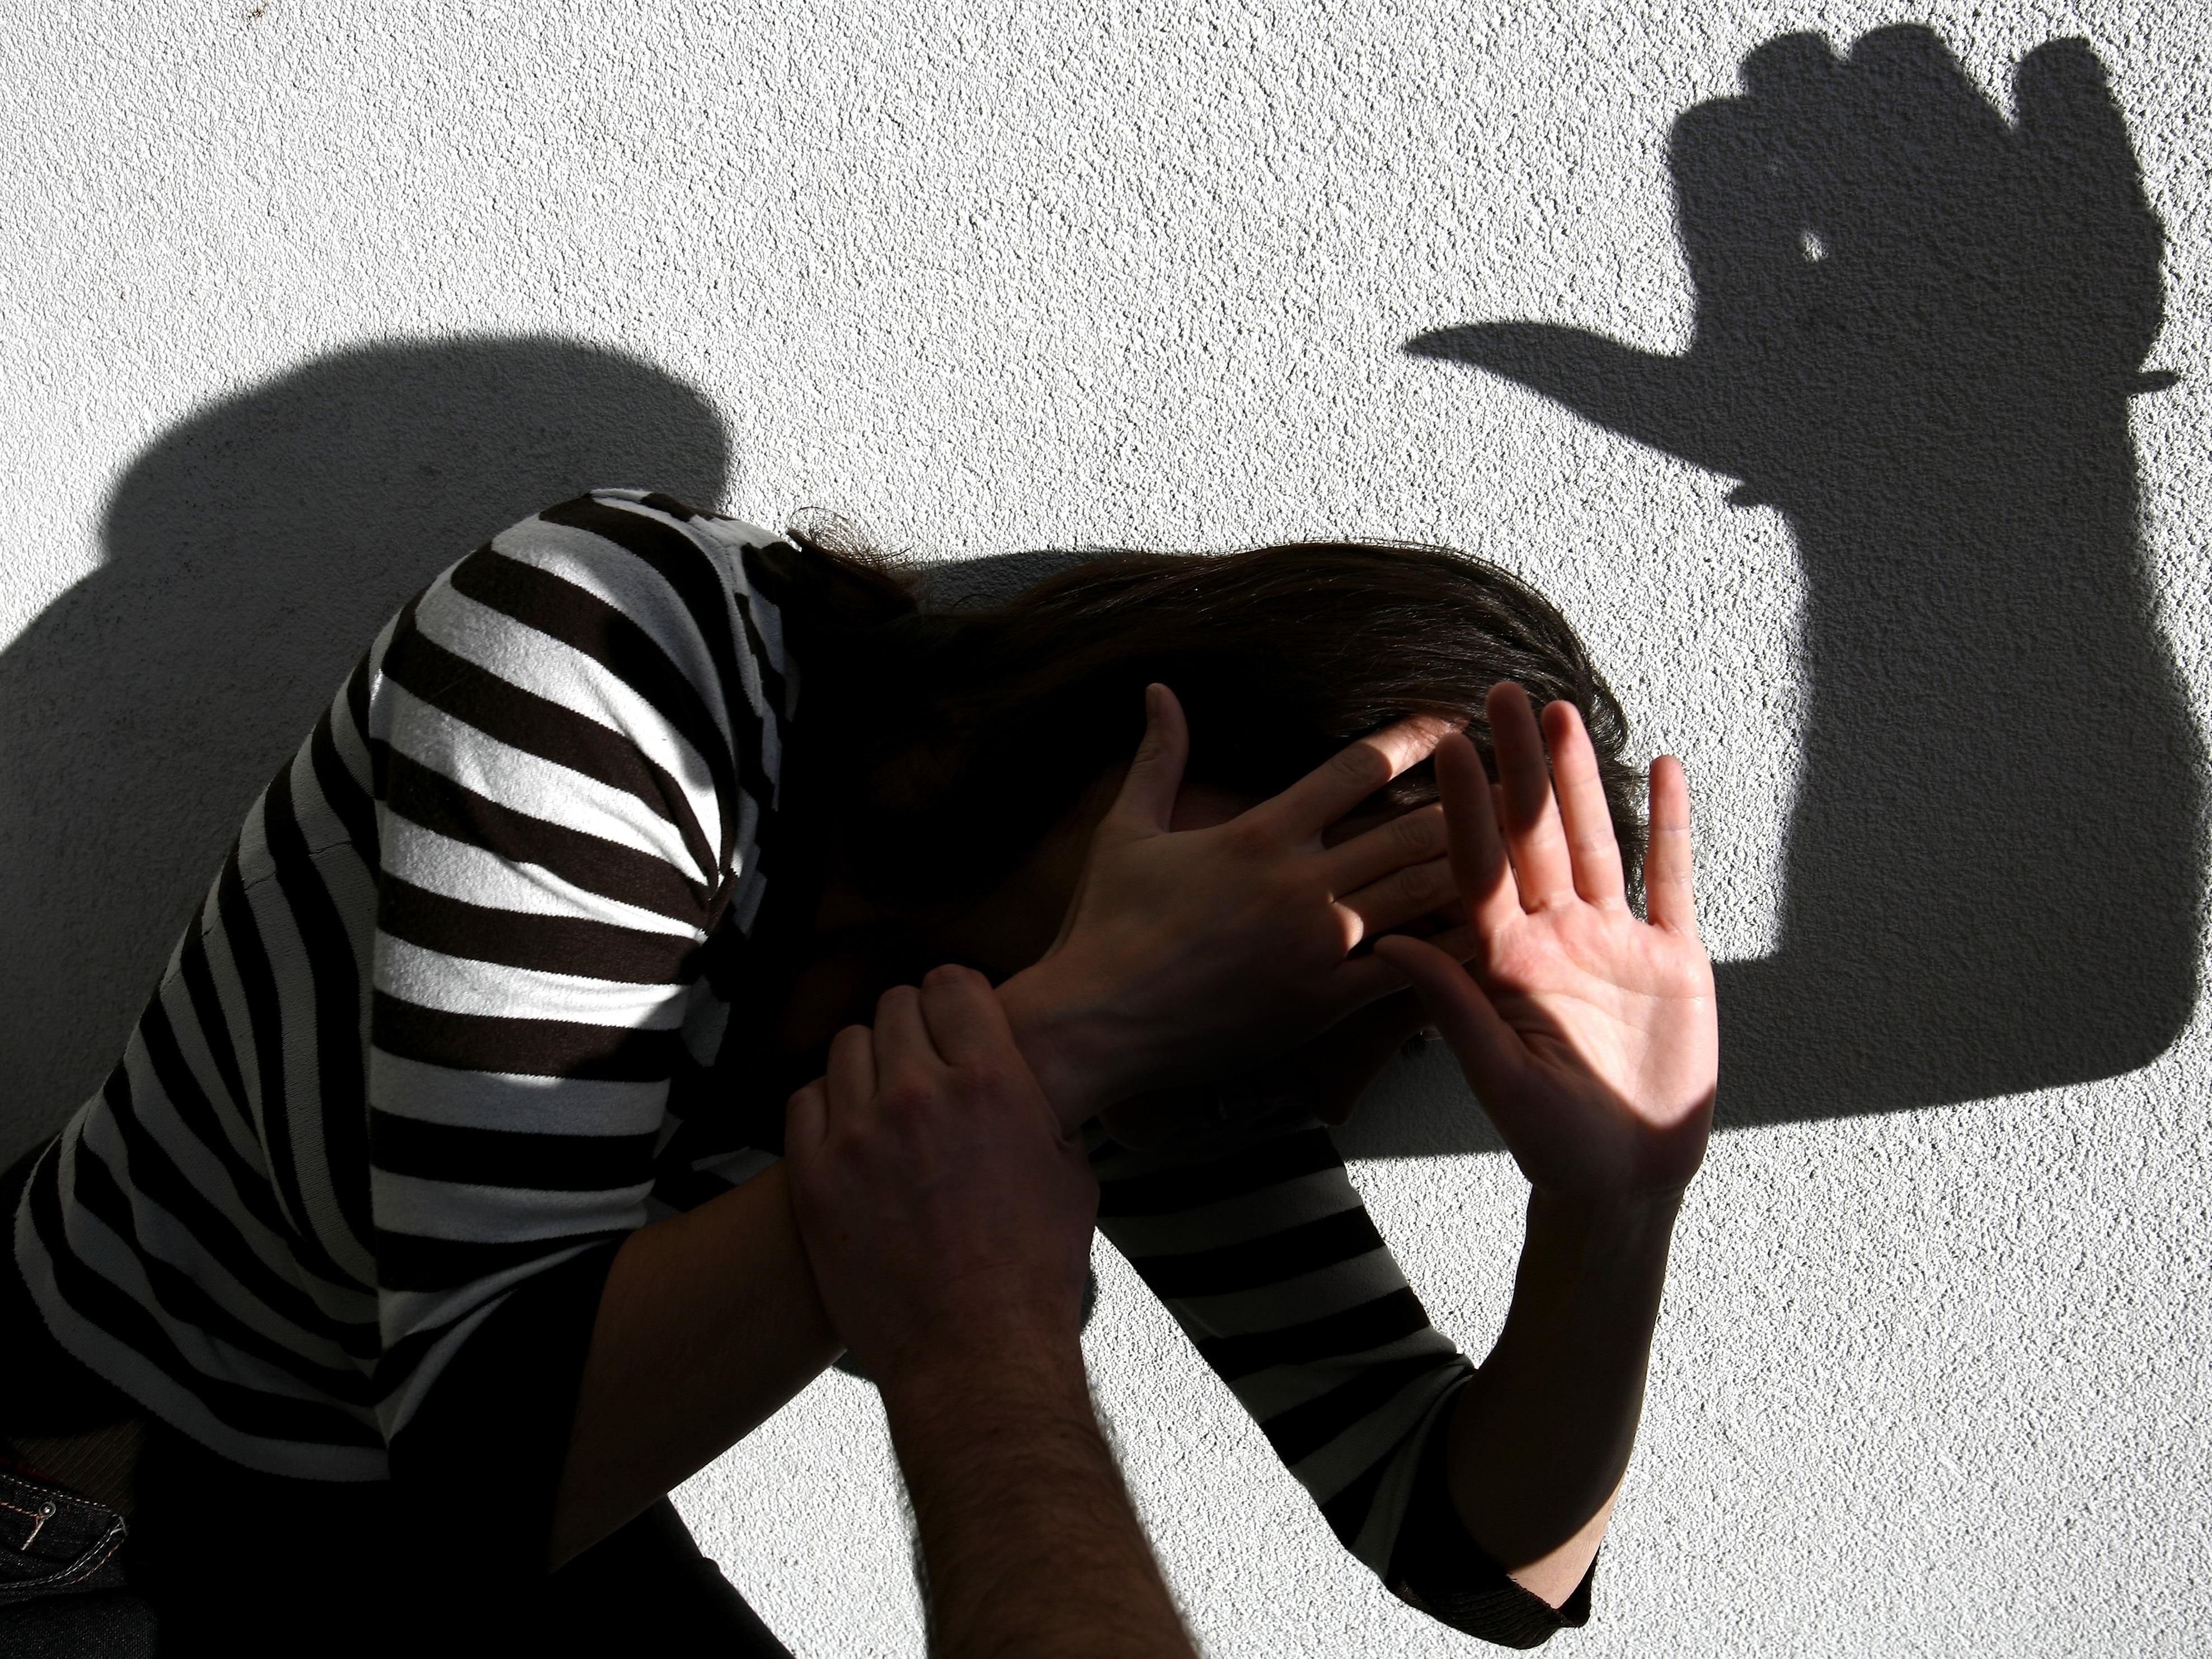 Neun Männer sollen in Wien ein 13-jähriges Mädchen missbraucht haben.